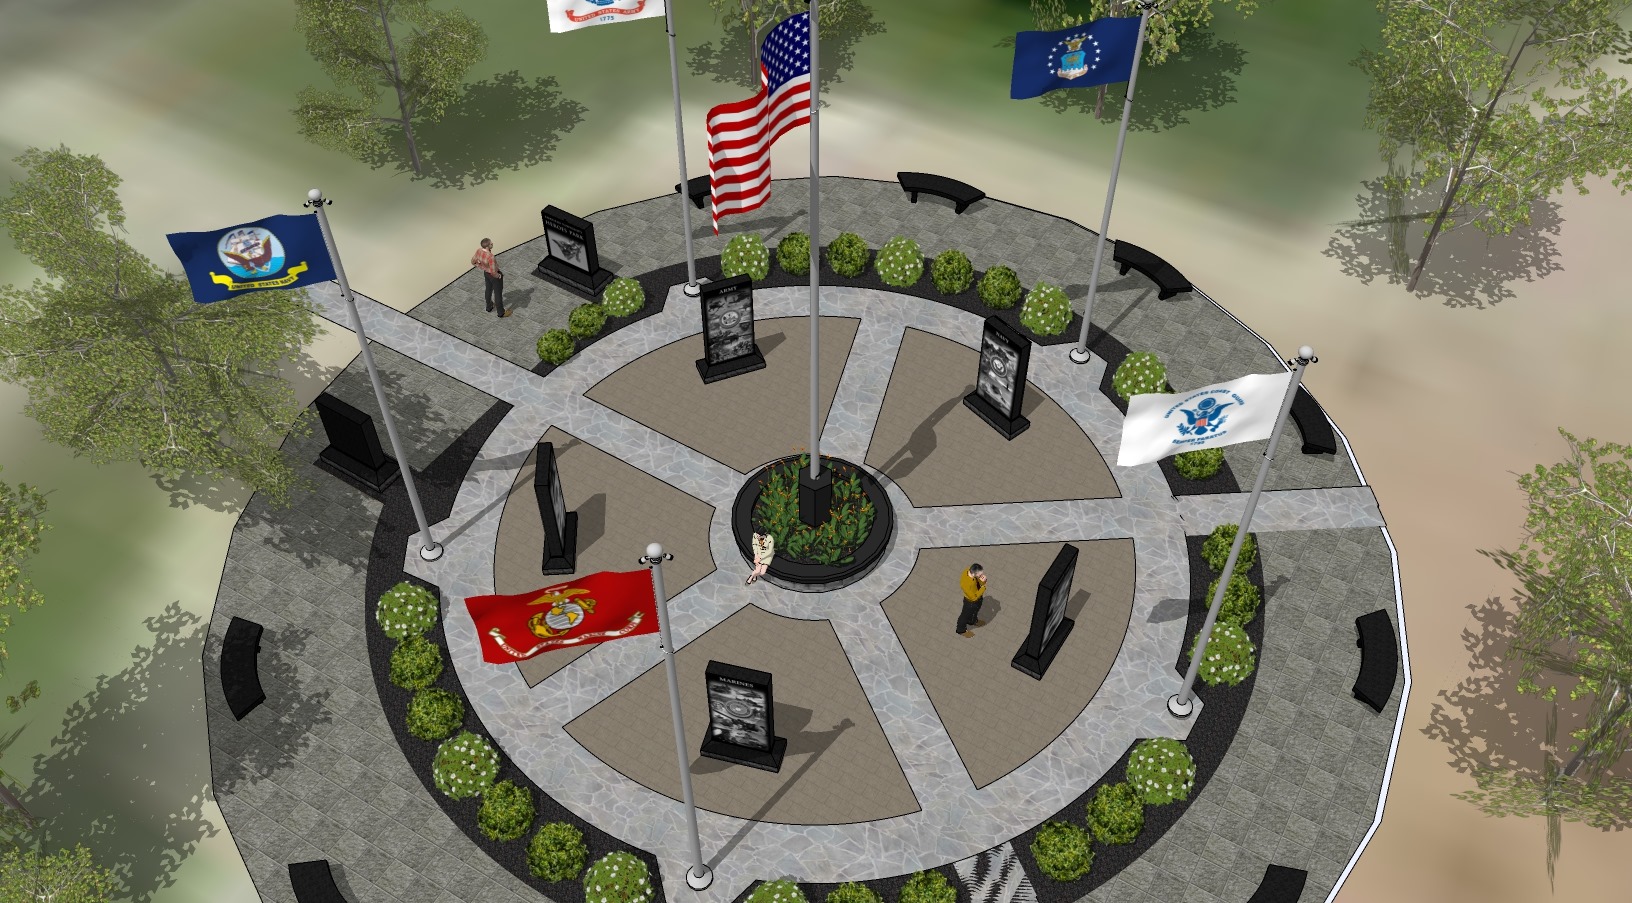 Veterans Memorial